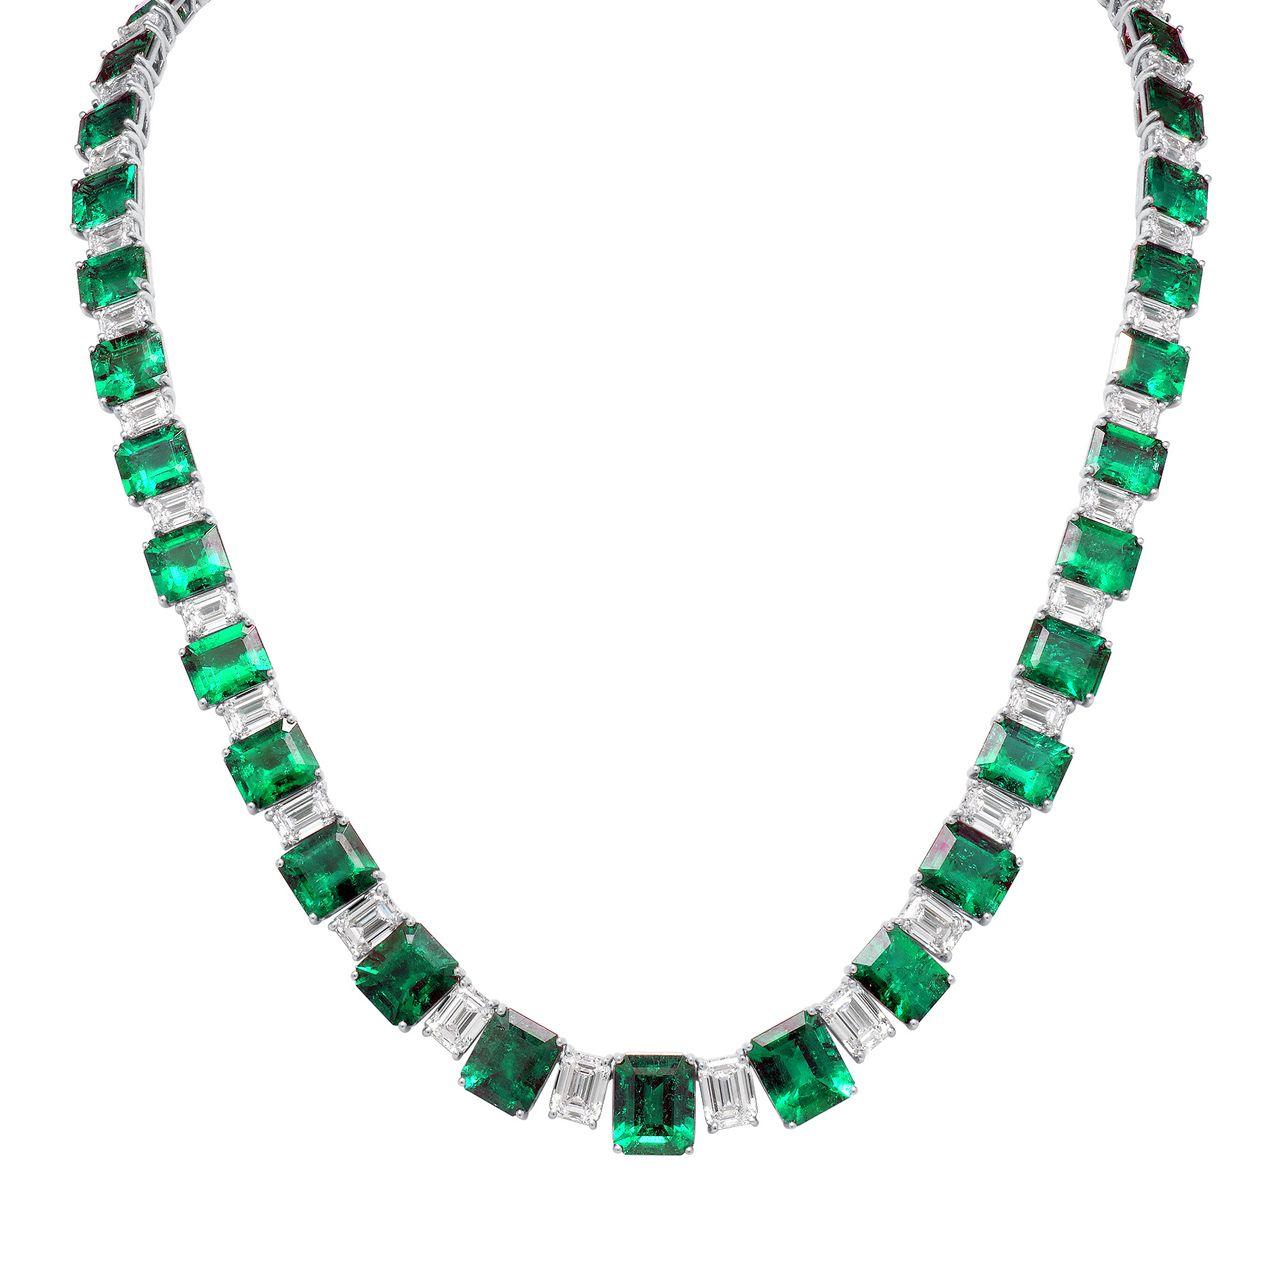 Exquisite kolumbianische Smaragd-Halskette: Ein wahres Meisterwerk an Eleganz und Luxus!

Dieses atemberaubende Collier besteht aus einer Reihe kolumbianischer Smaragde von insgesamt 55 Karat, die von funkelnden Diamanten von 20,50 Karat begleitet